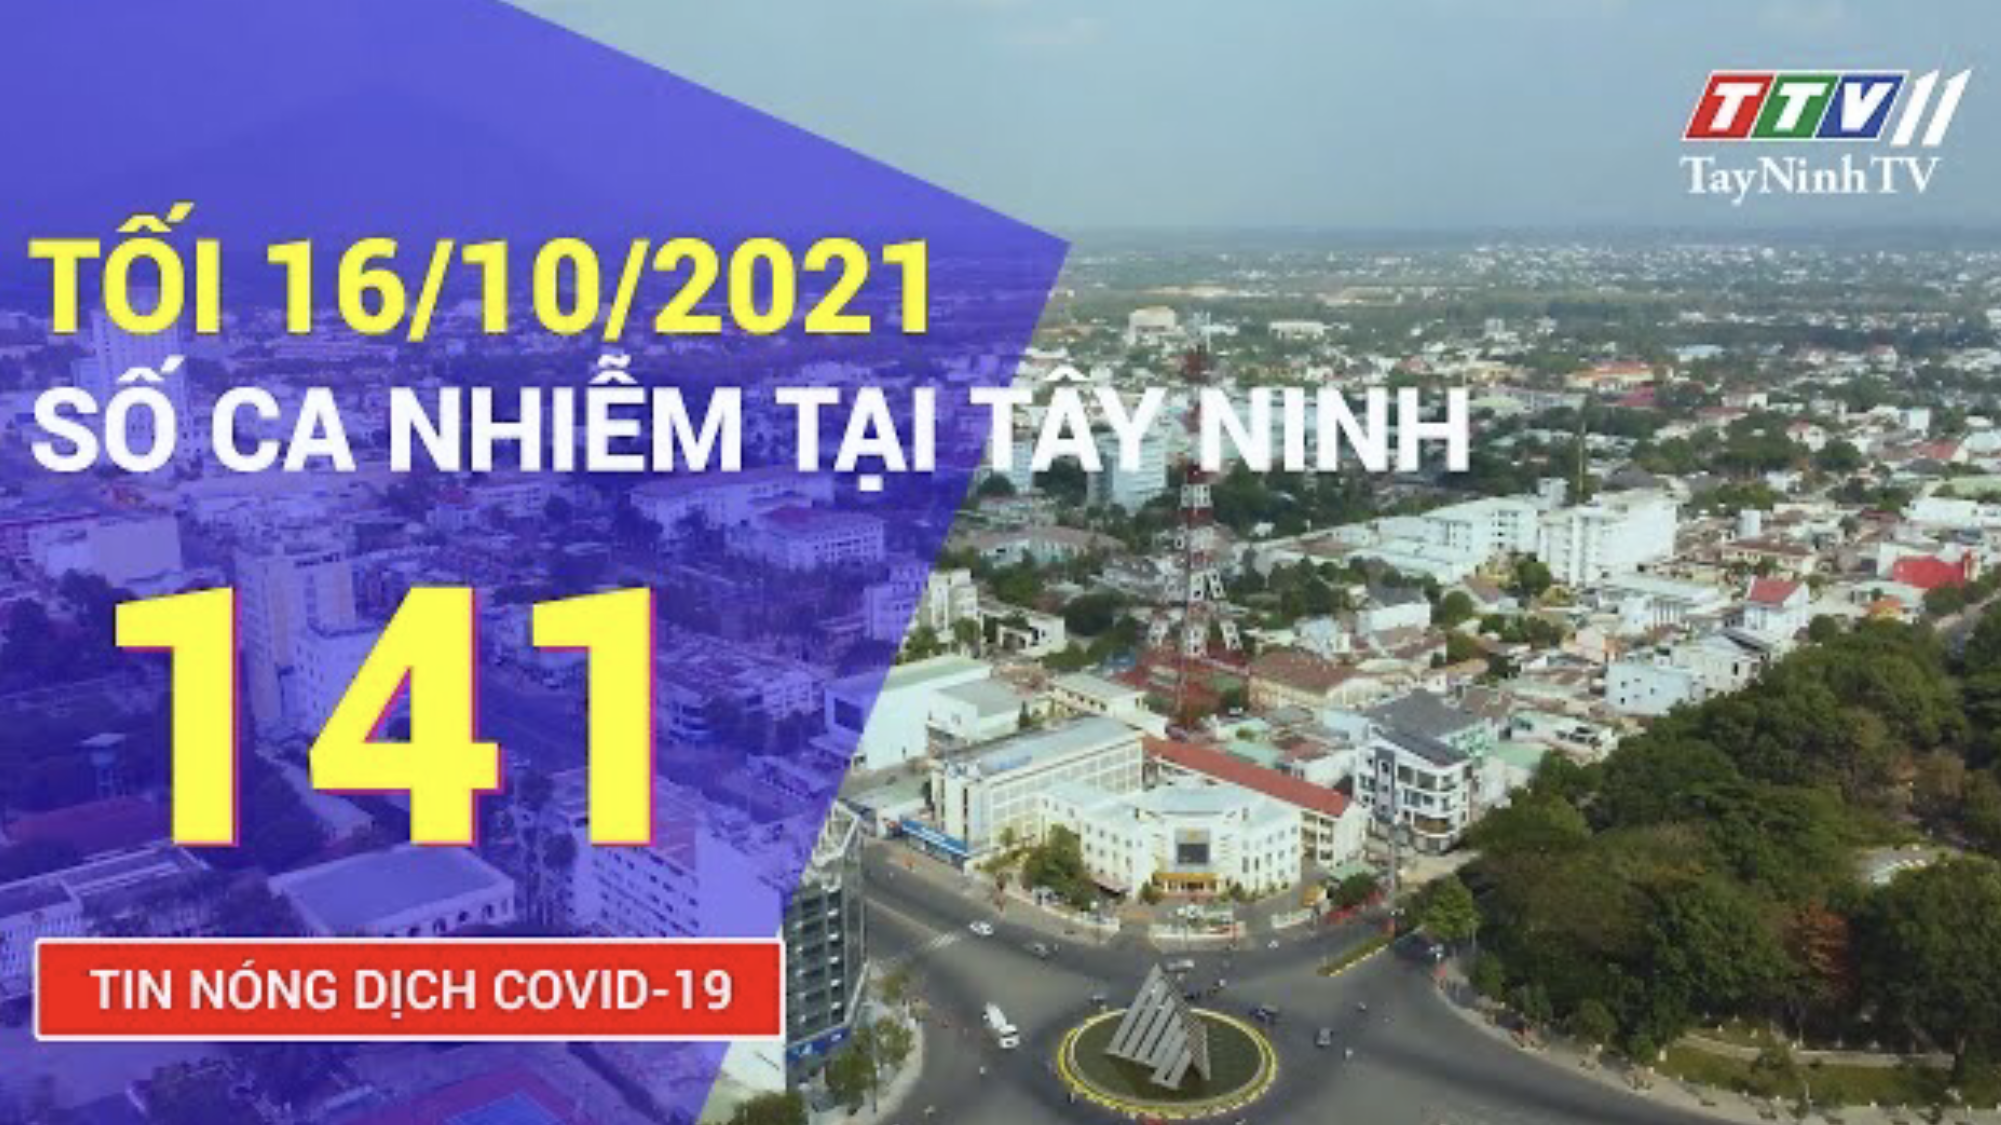 TIN TỨC COVID-19 TỐI 16/10/2021 | Tin tức hôm nay | TayNinhTV